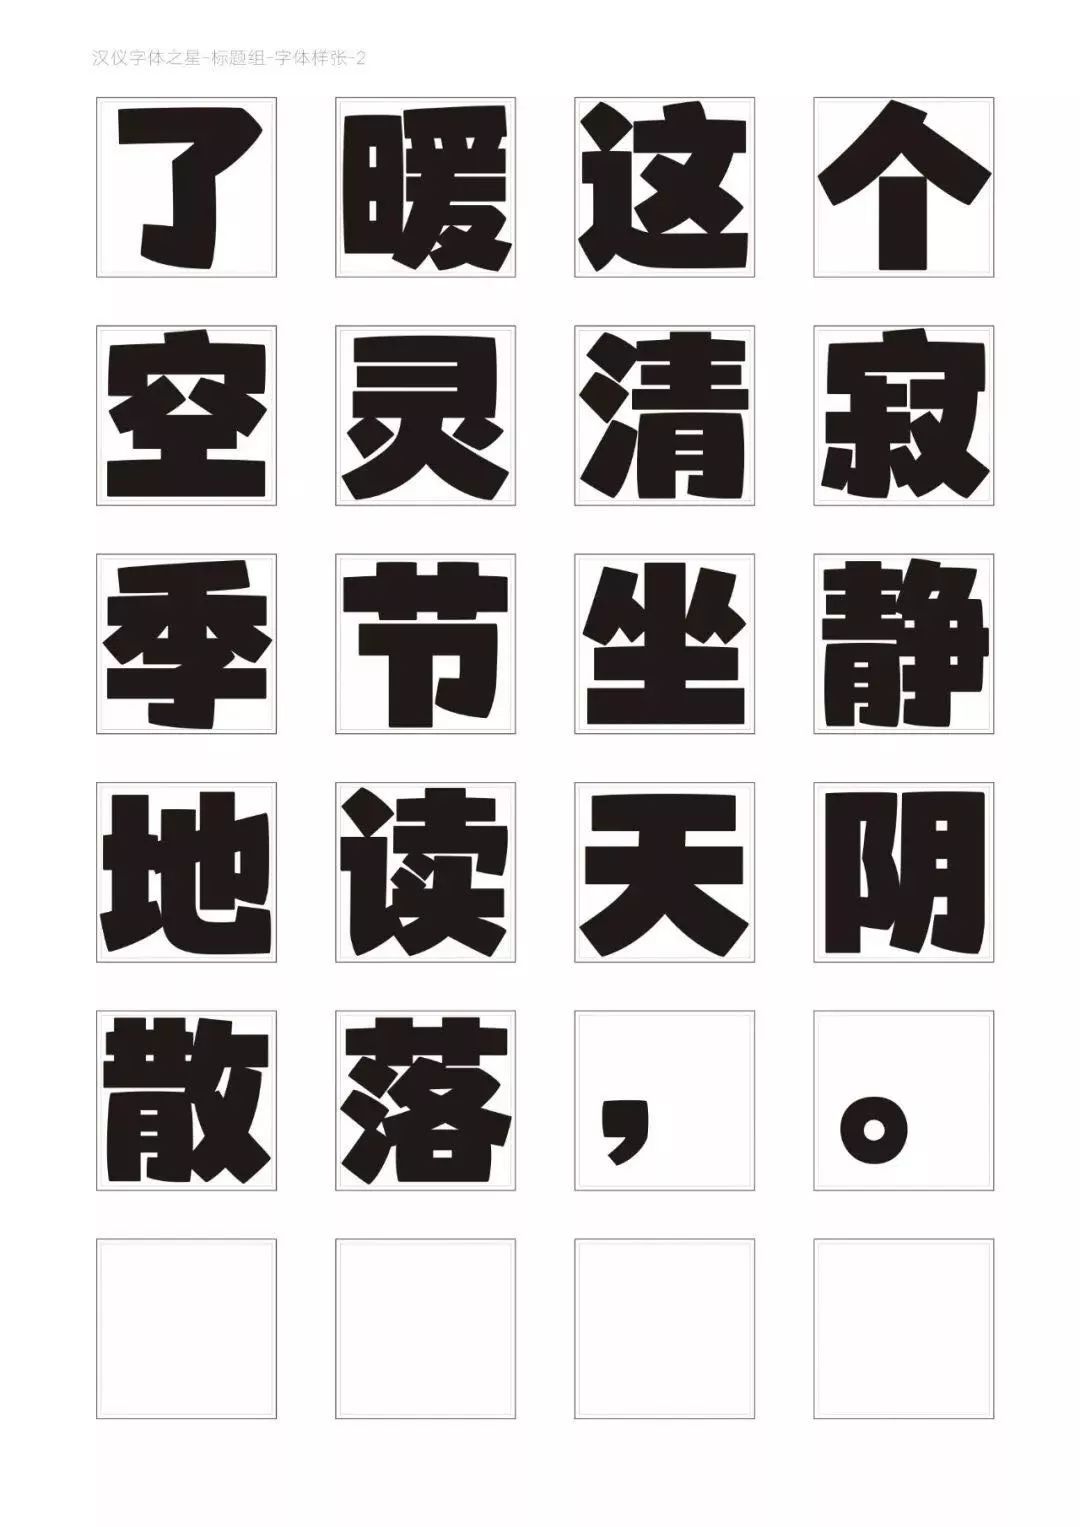 这款新字体太美了!三代设计师20年心血打磨9千余个汉字